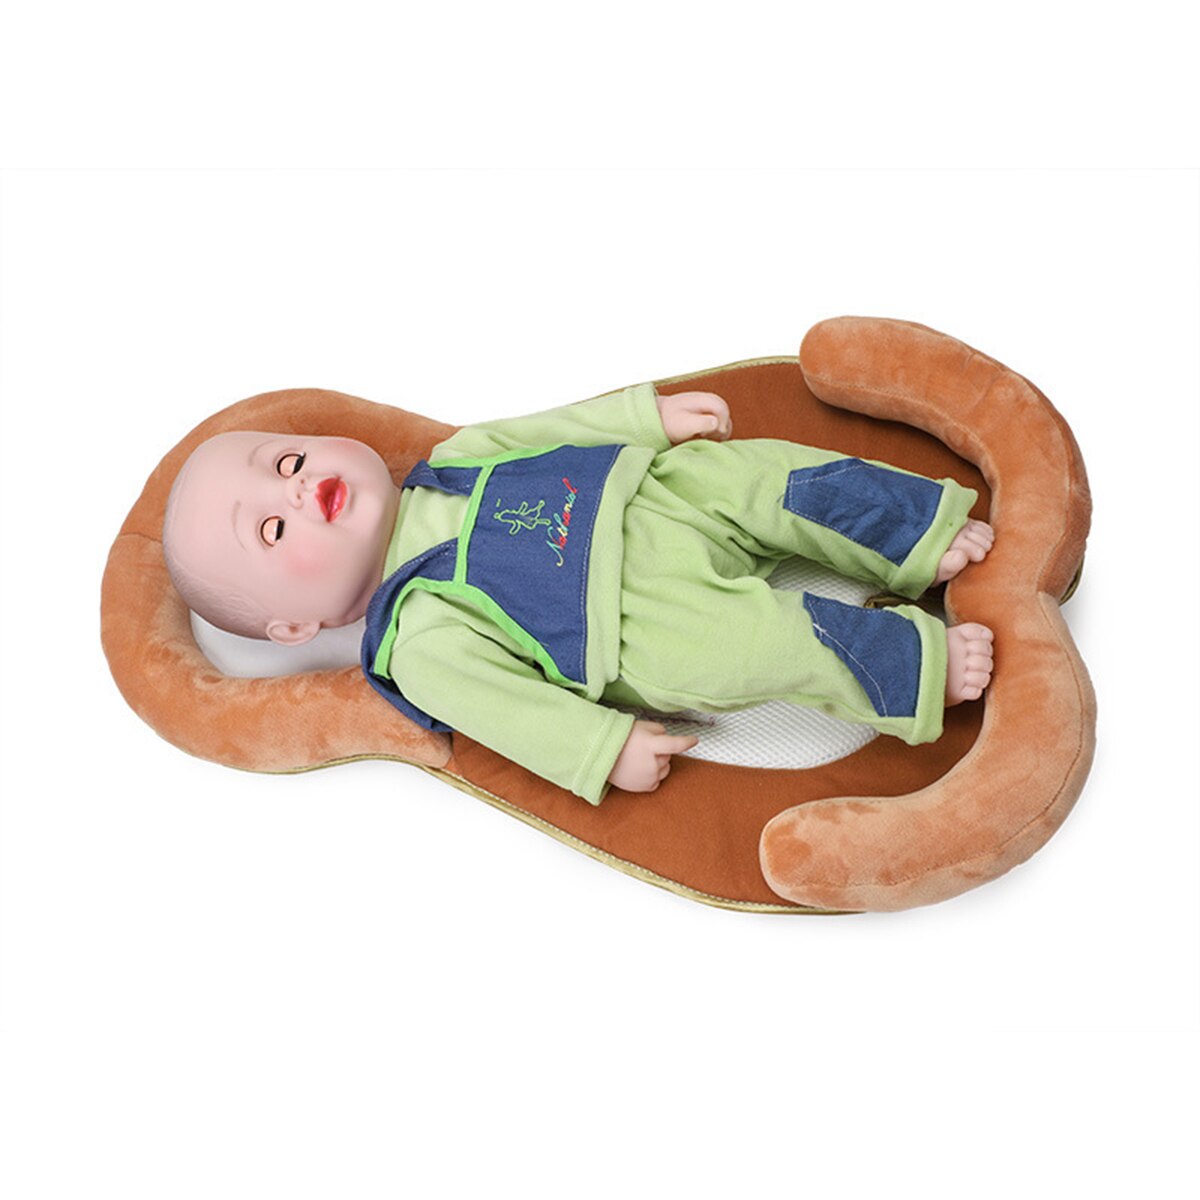 Bærbar barneseng seng reden sammenfoldelig børnehave rejseseng nyfødt baby pude anti-rollover madras spædbarn babynest